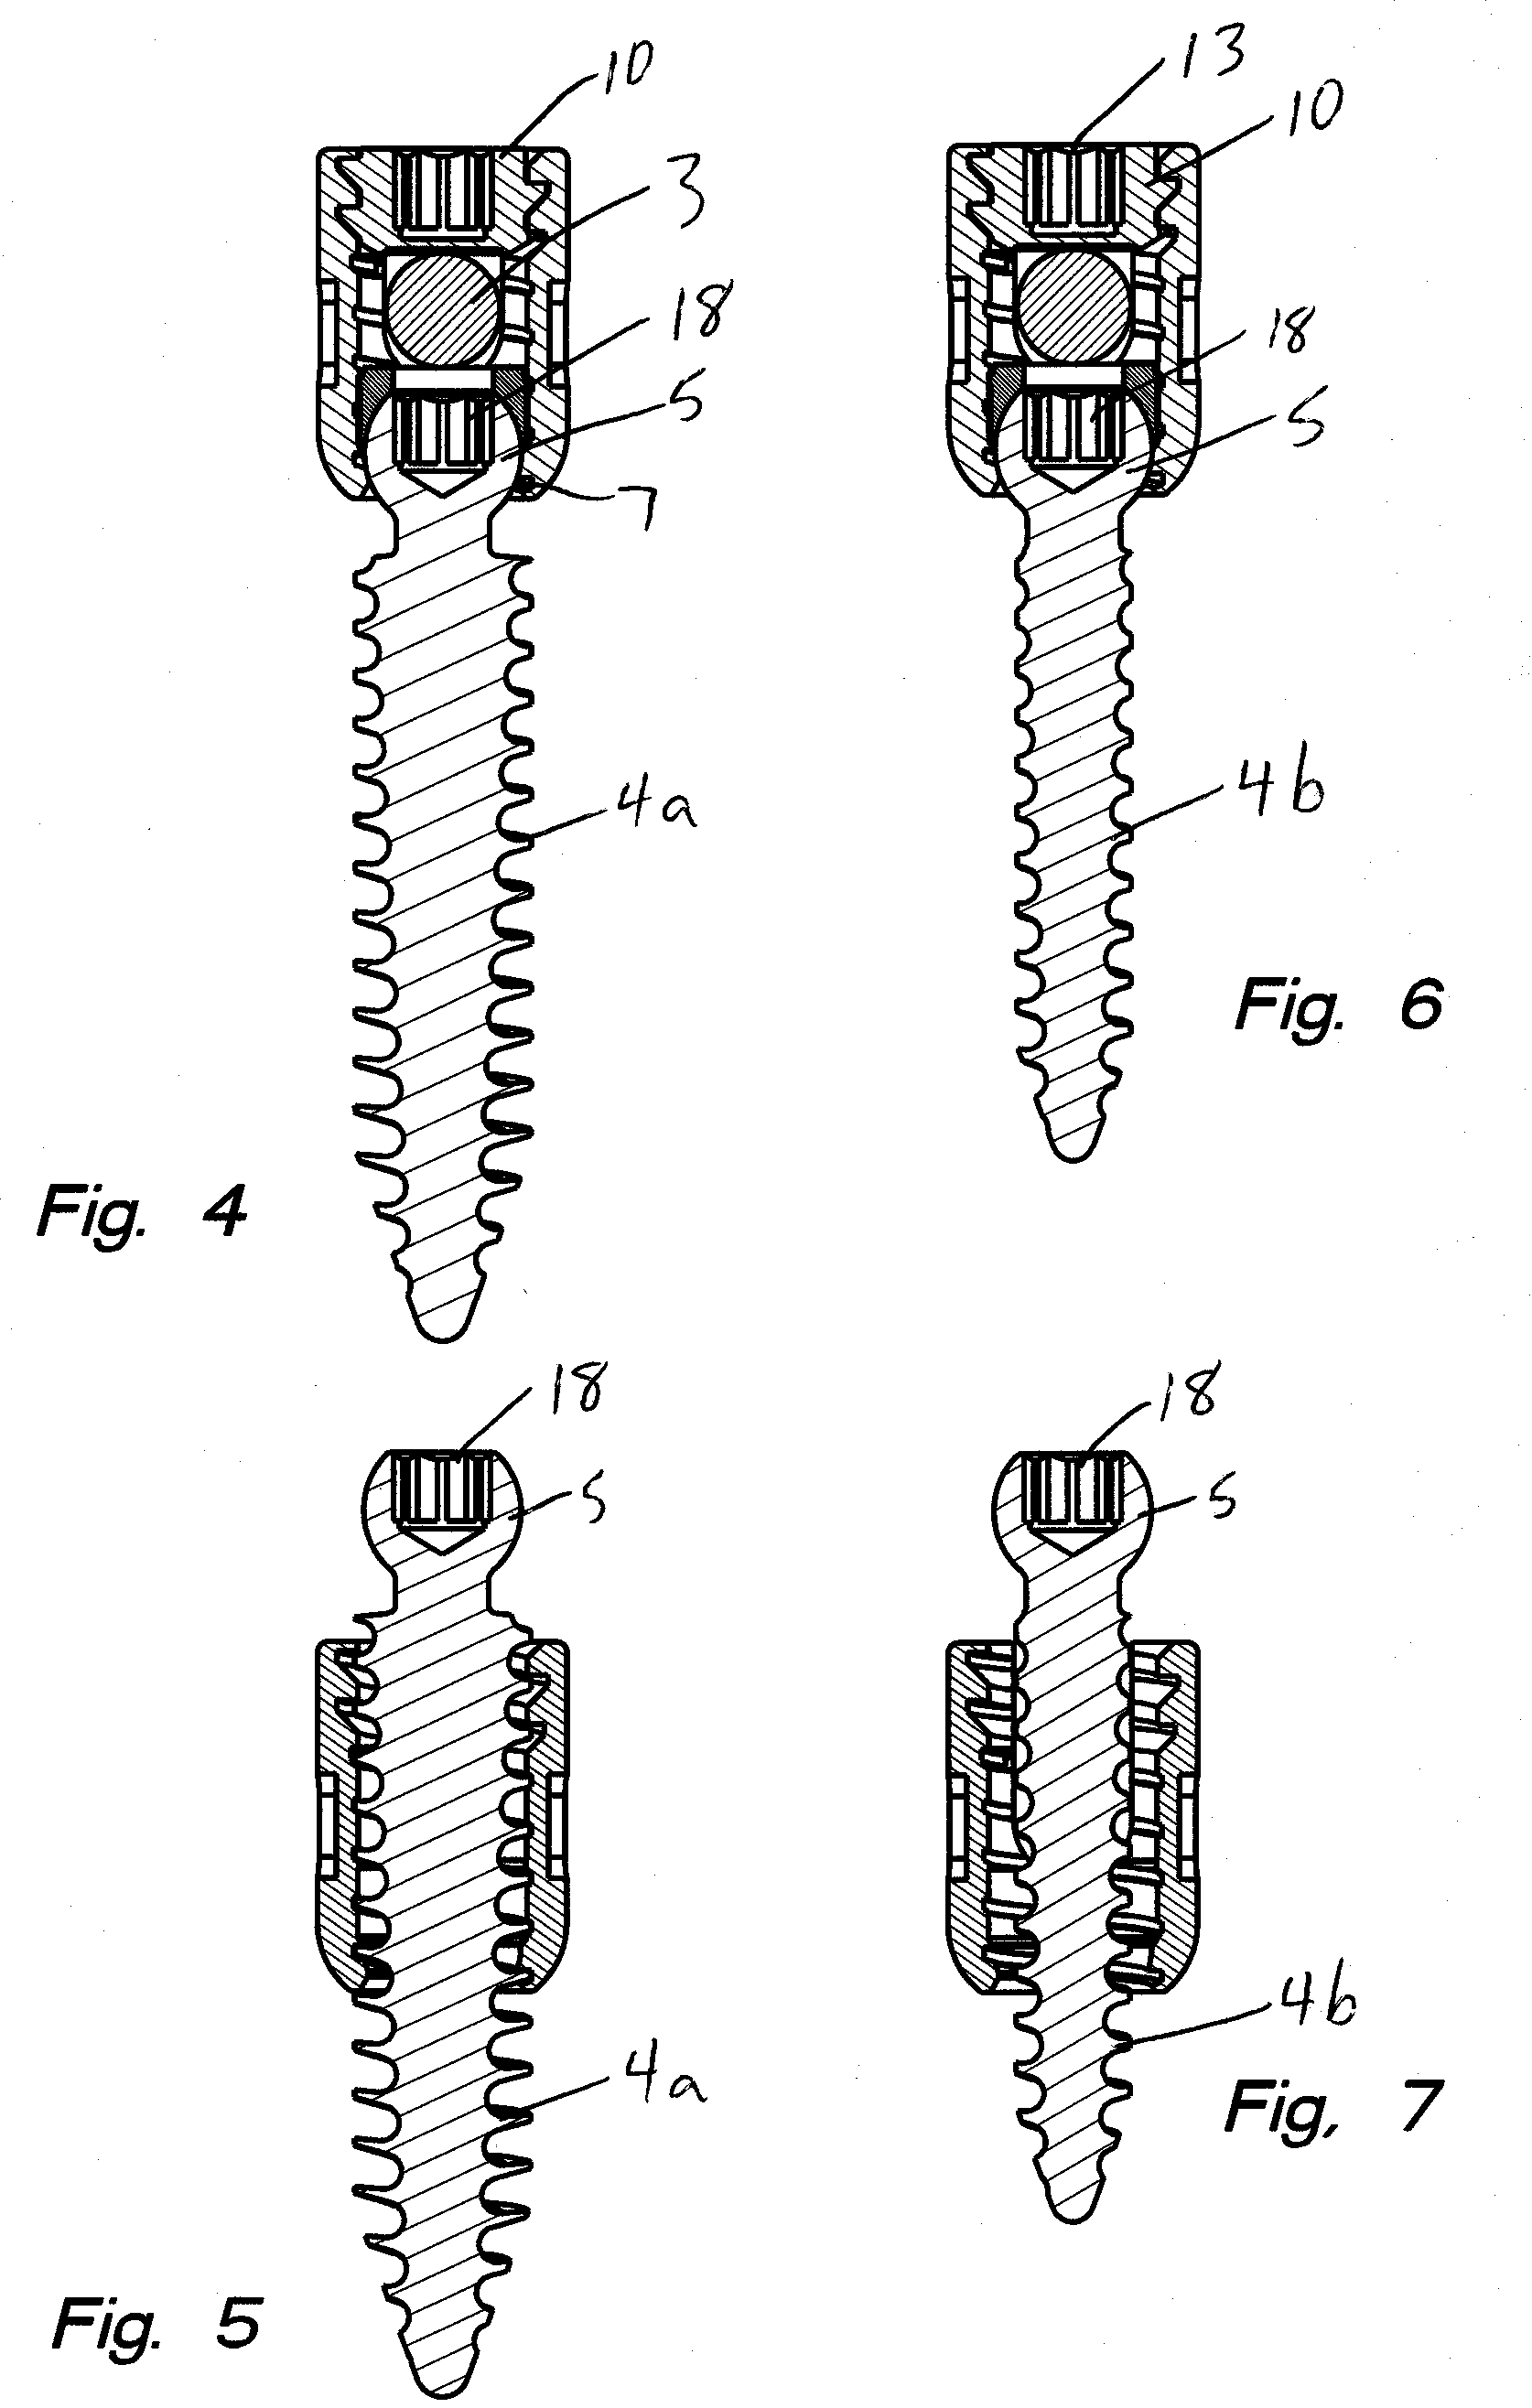 Polyaxial bone screw